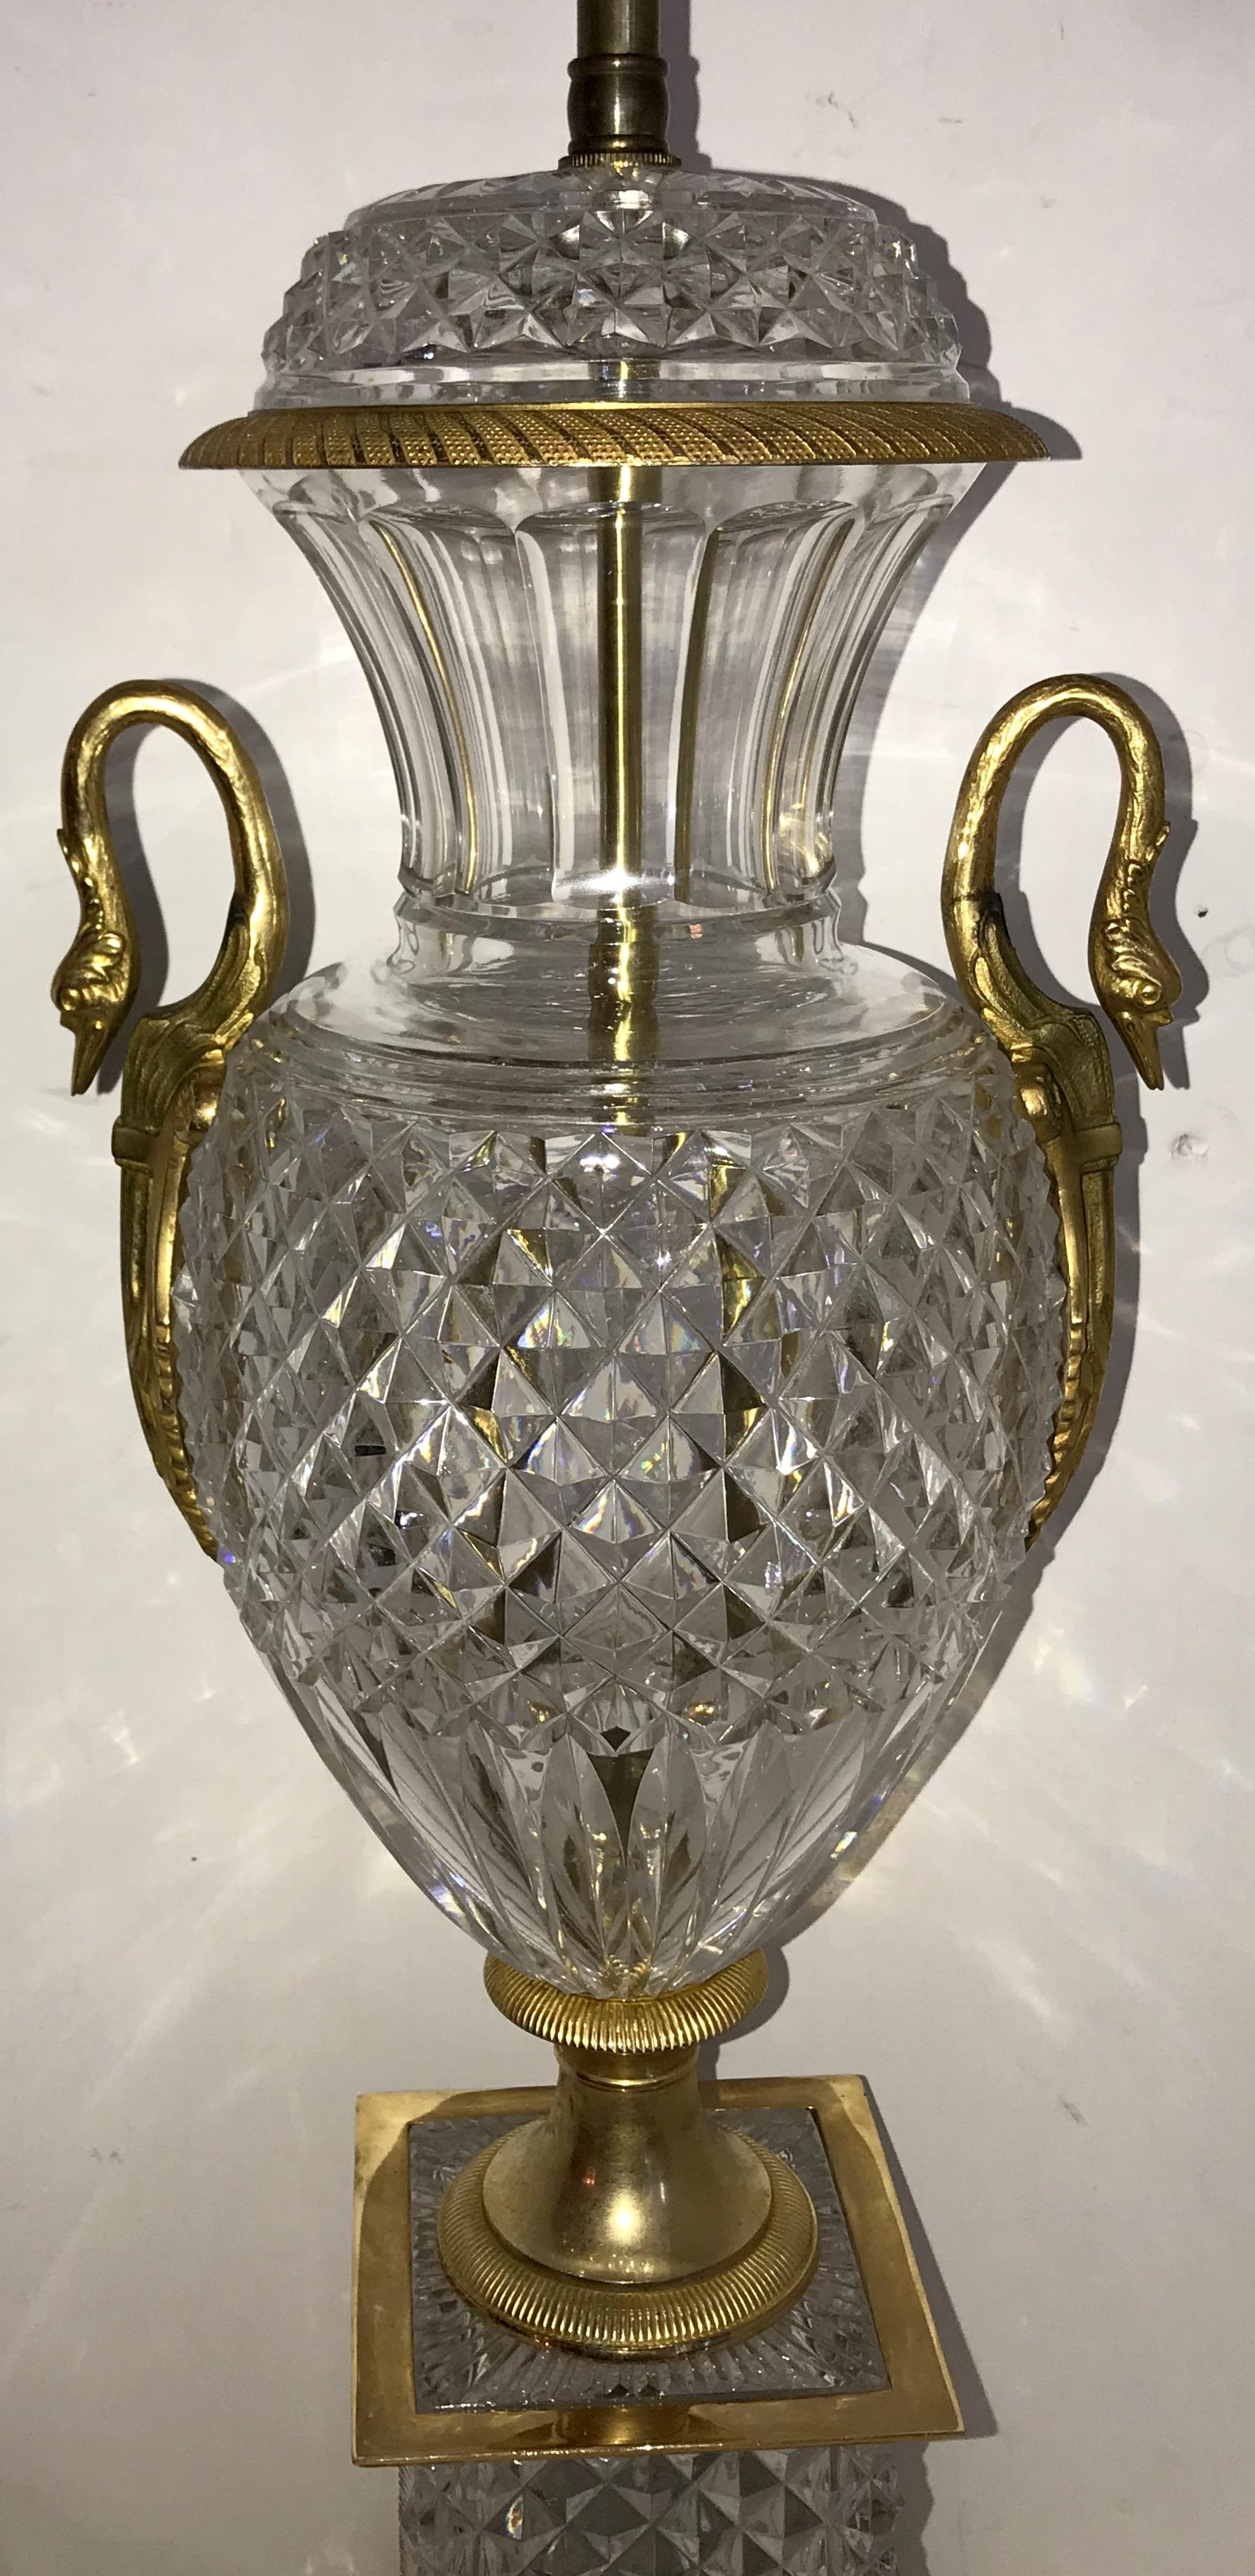 Ein feines Paar französischer neoklassischer Urnen aus geschliffenem Kristall und vergoldeter Bronze mit Schwan und Ormolu-Griff, große Lampen mit Kristalldeckel und quadratischem Sockel.
In der Art und Qualität von Baccarat.